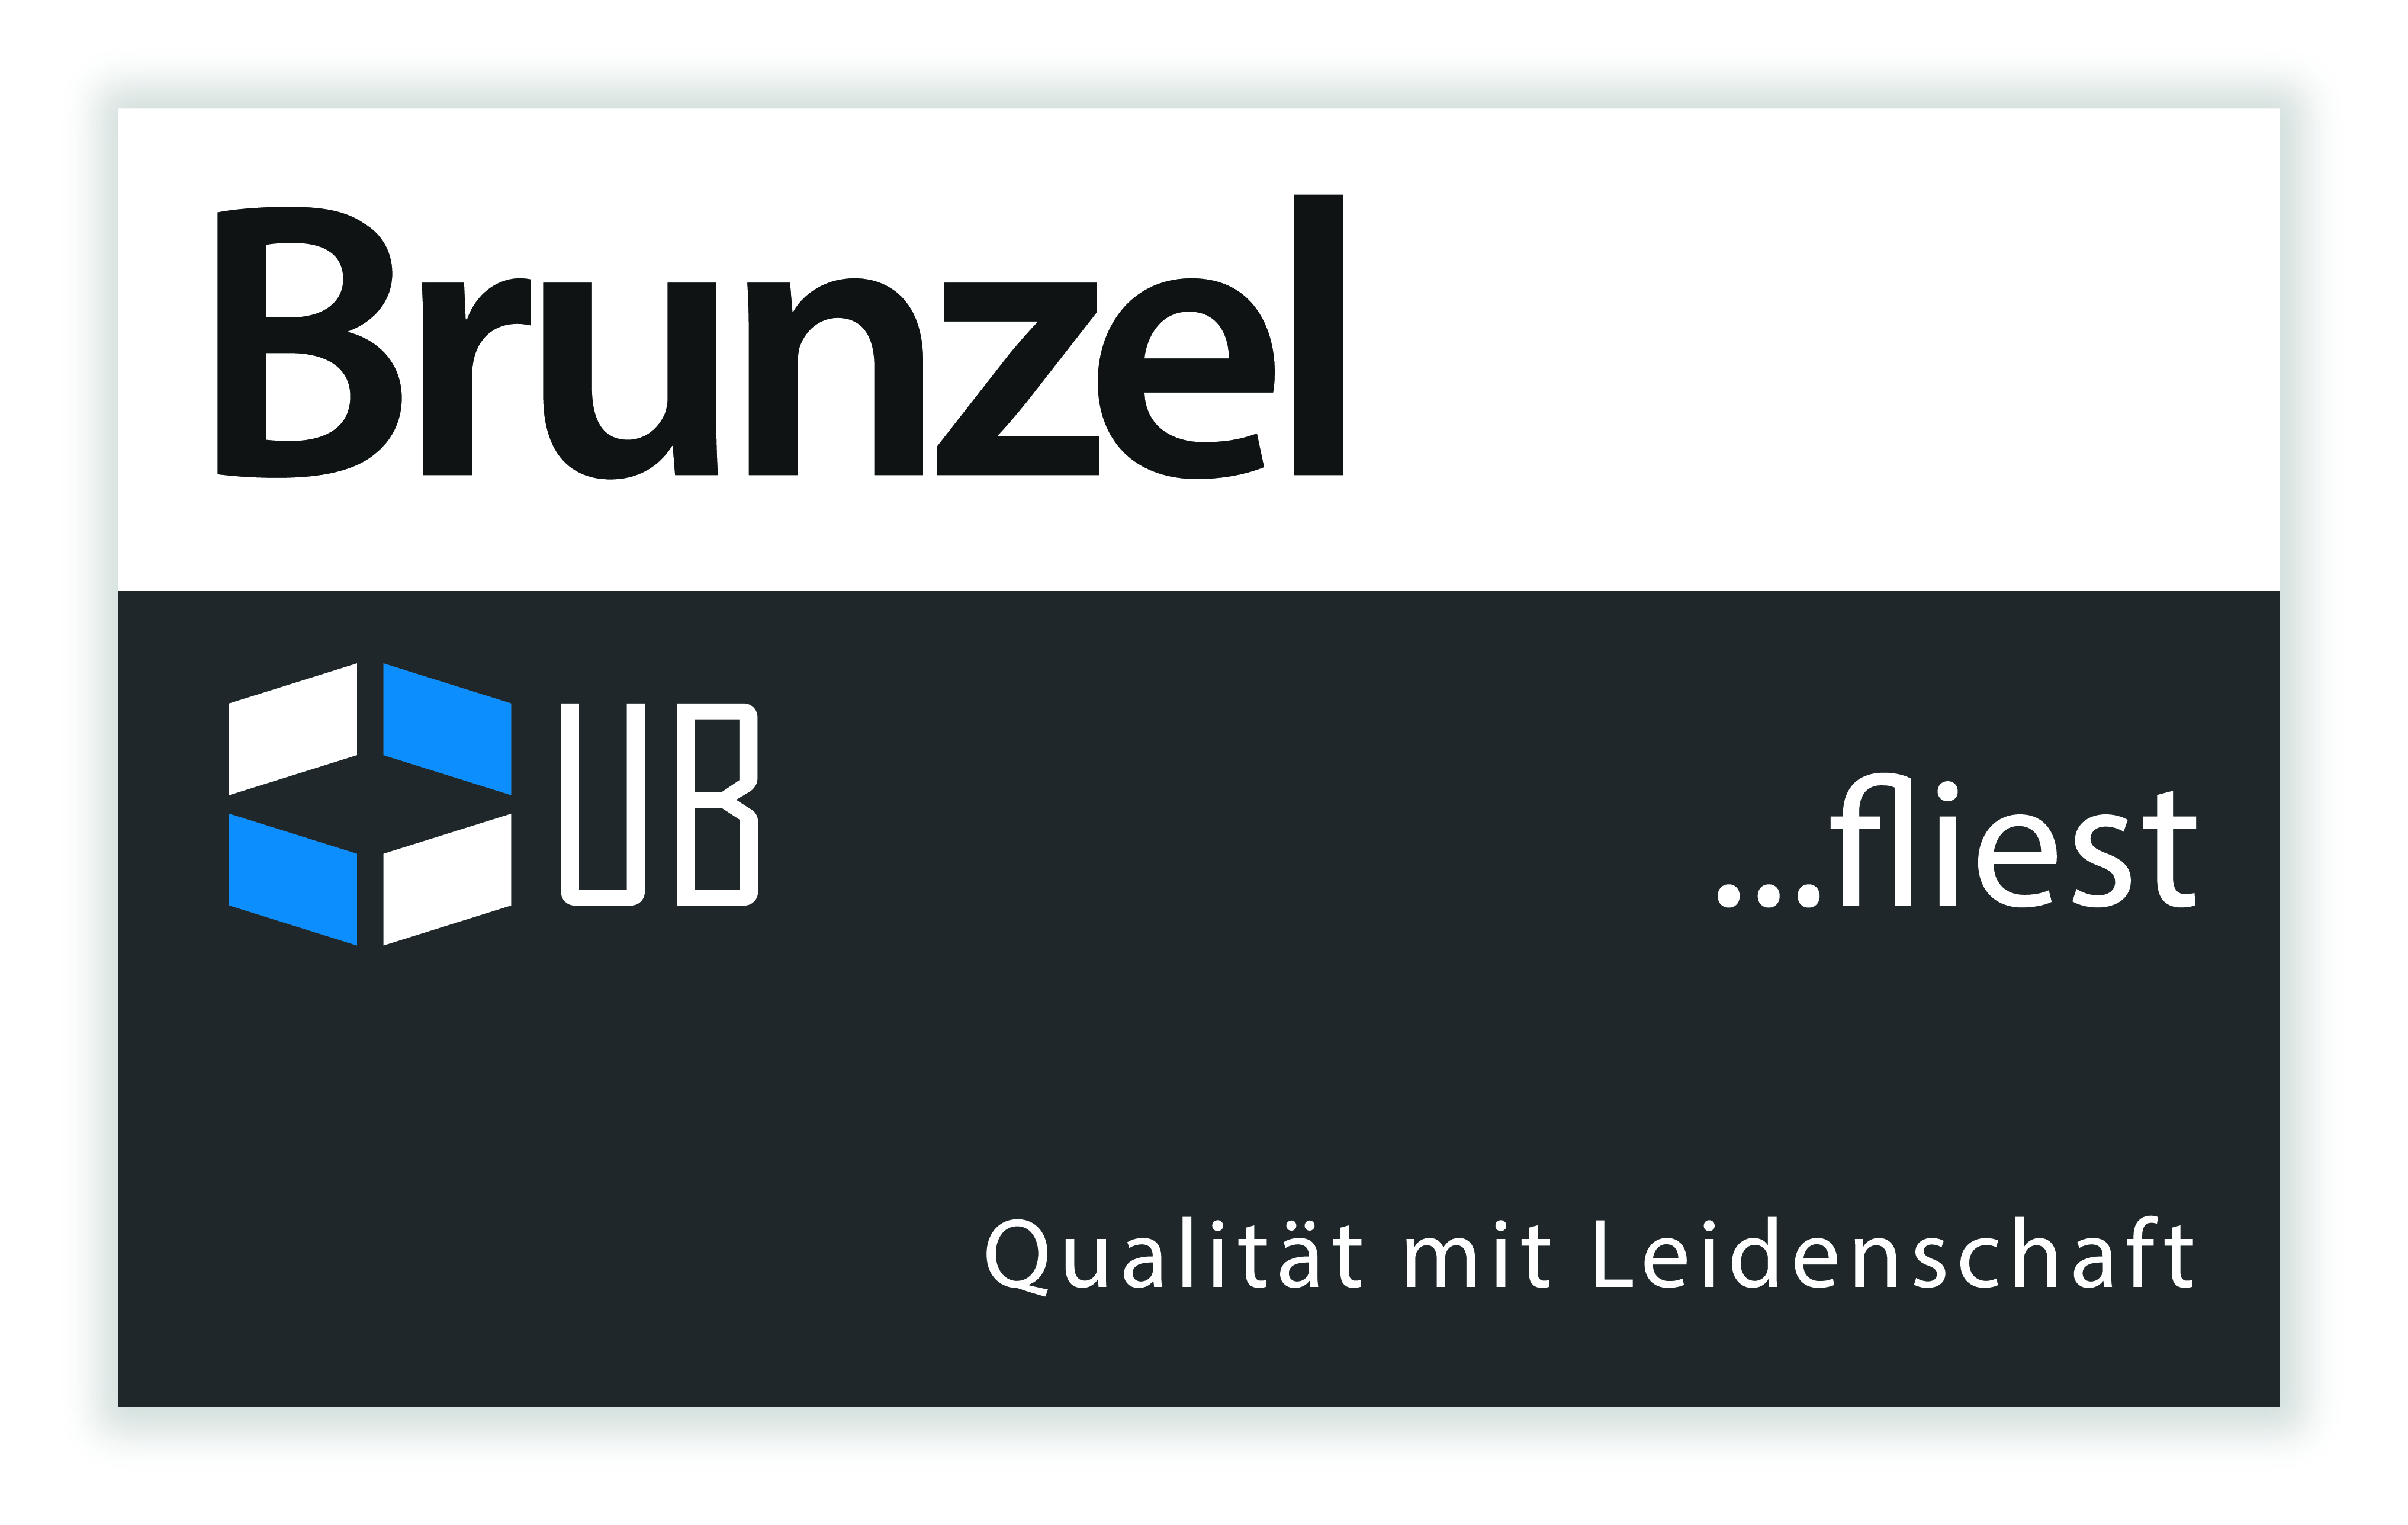 Brunzel fliest... Qualität mit Leidenschaft Logo